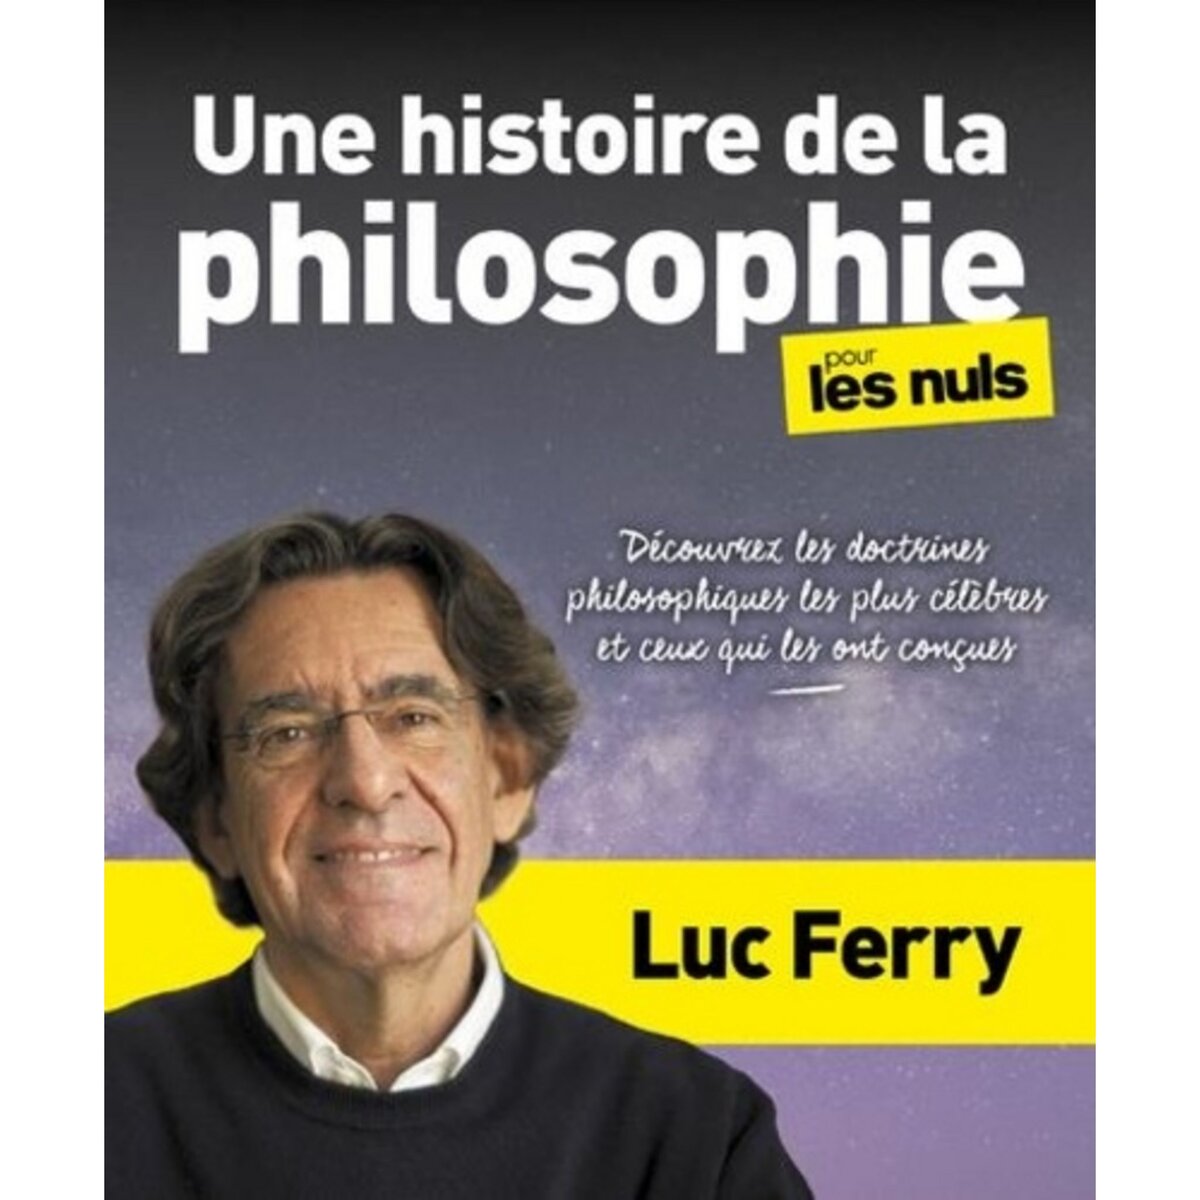  UNE HISTOIRE DE LA PHILOSOPHIE POUR LES NULS, Ferry Luc